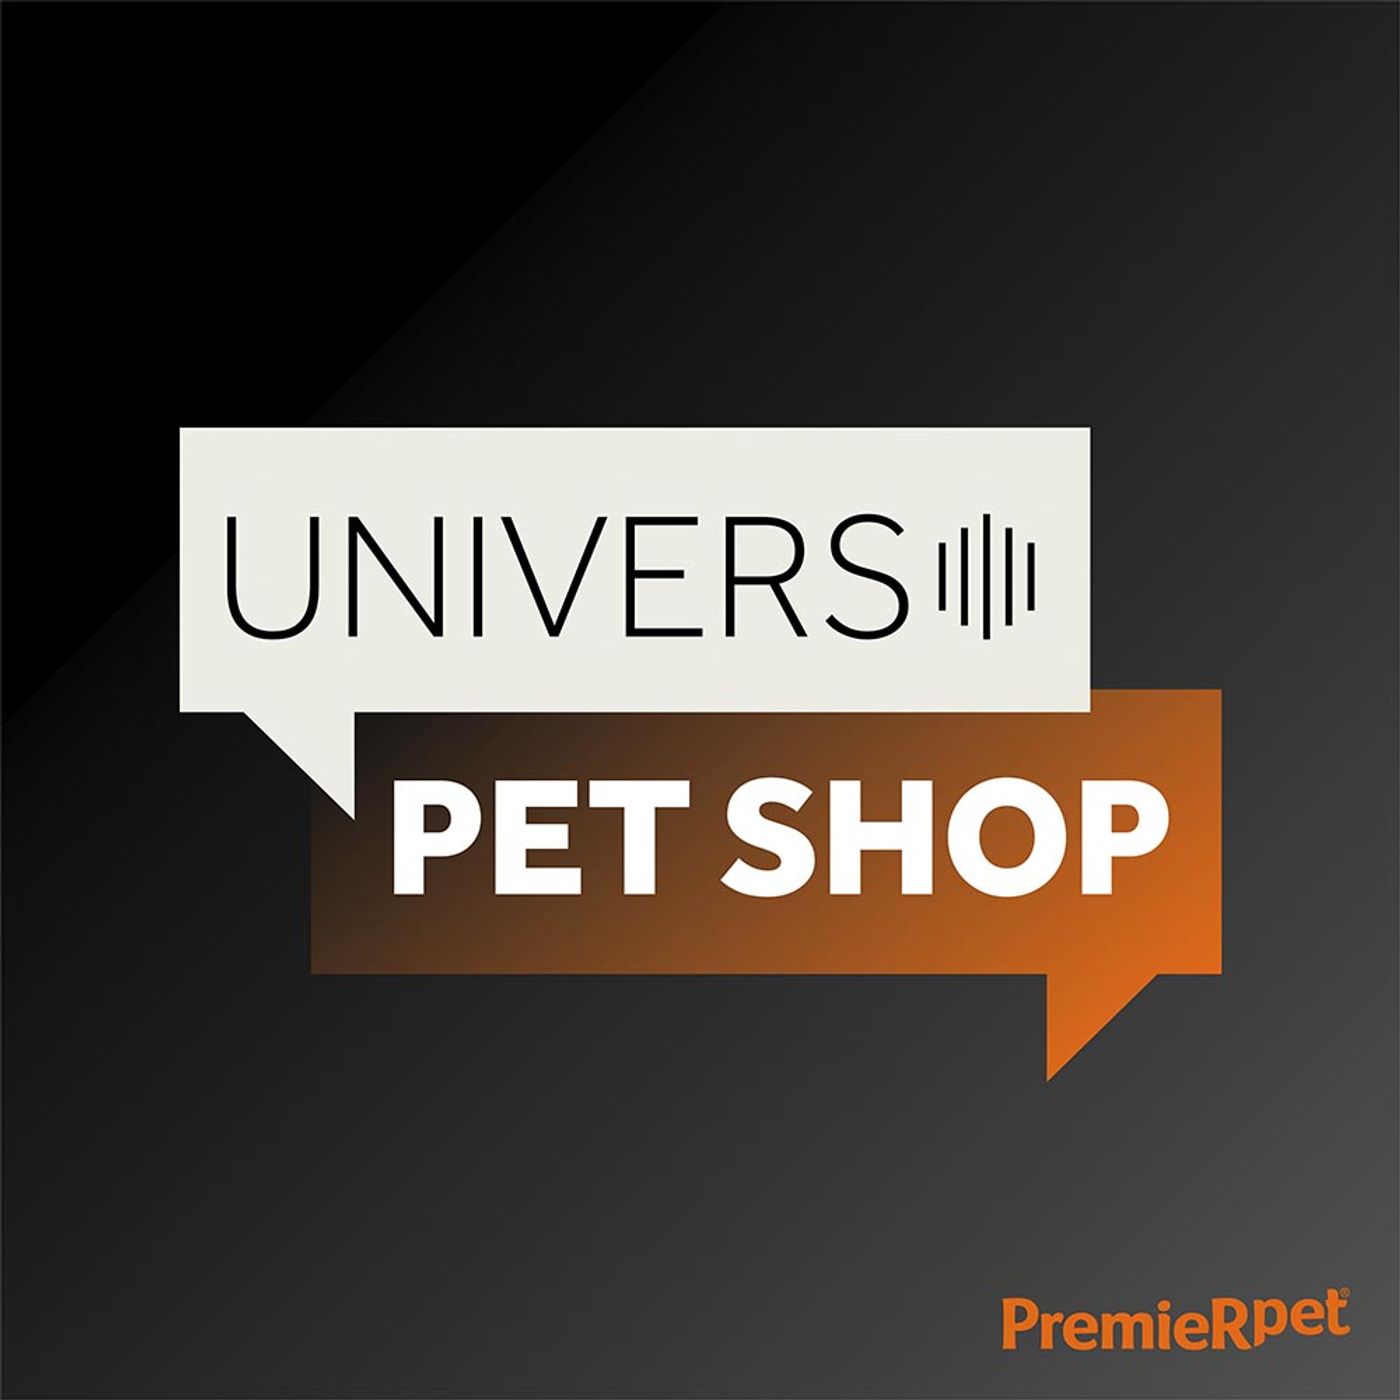 EP6 | Edição especial mês do lojista - Paixão por resultados | Universo Pet Shop| PremieRpet